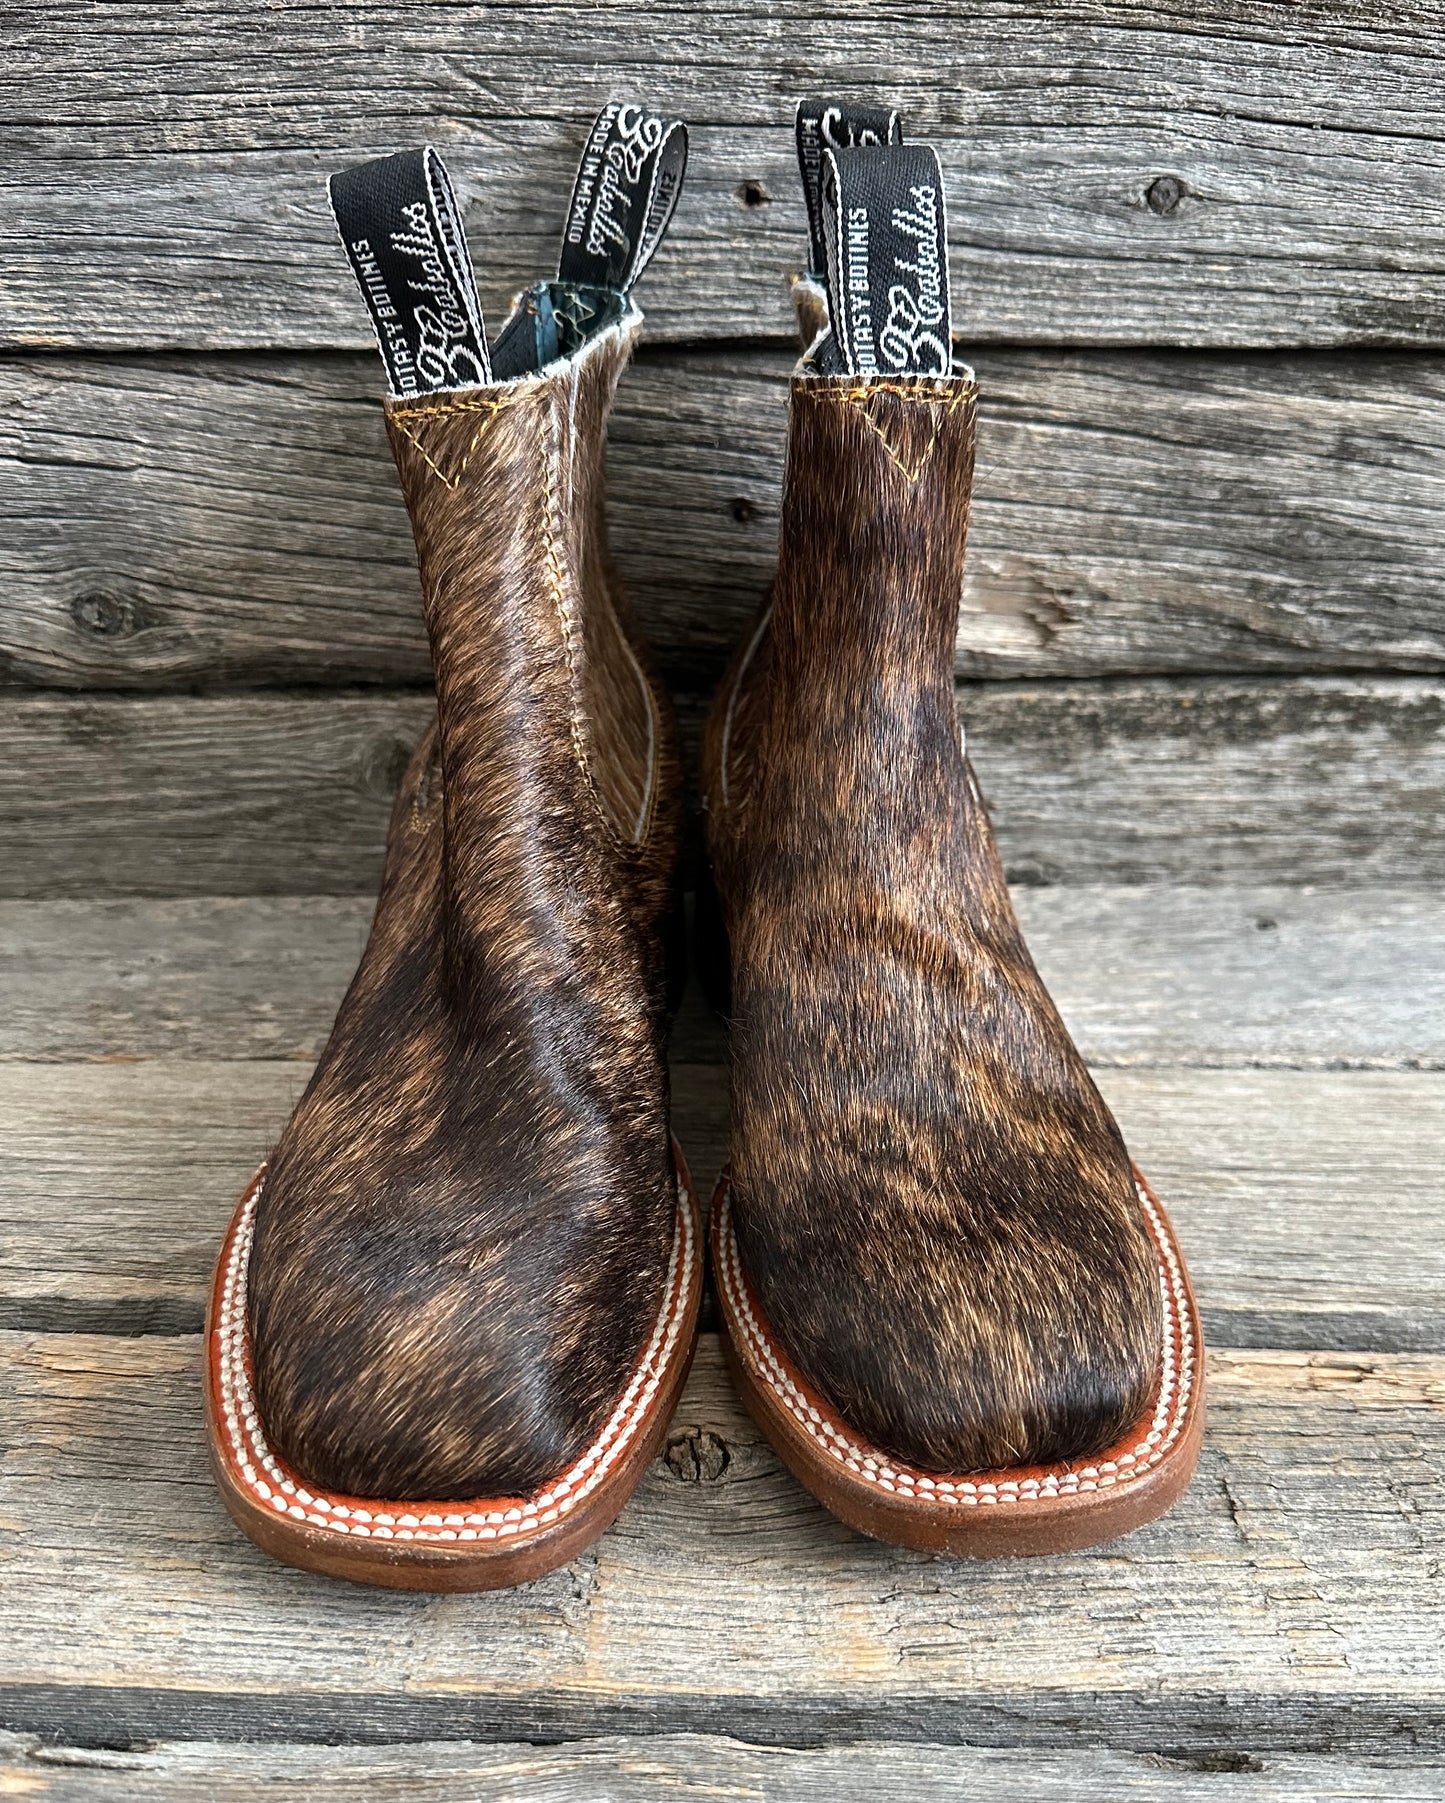 Gringo Cowhide Boots - Size 7